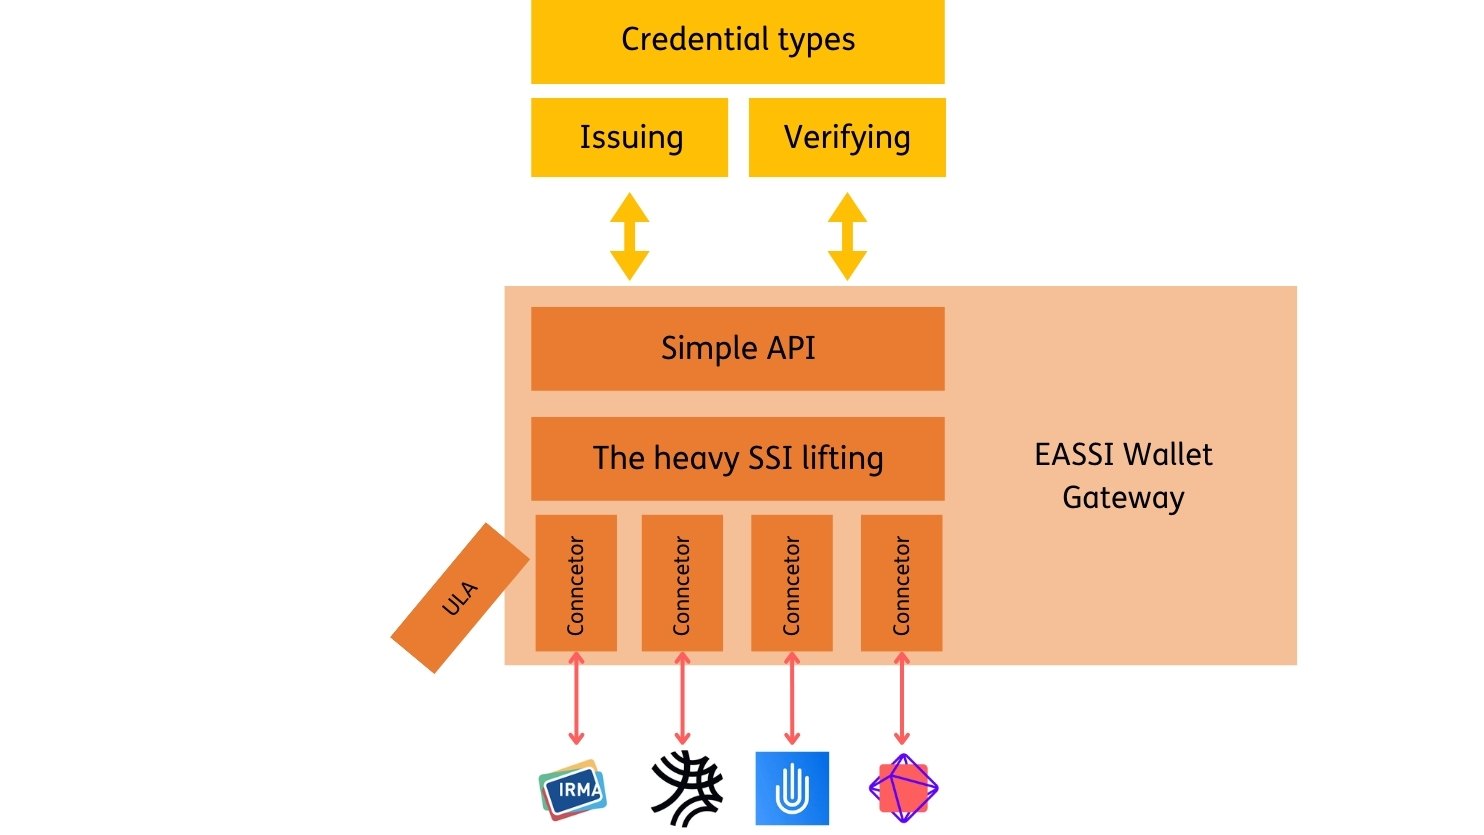 EASSI Wallet Gateway